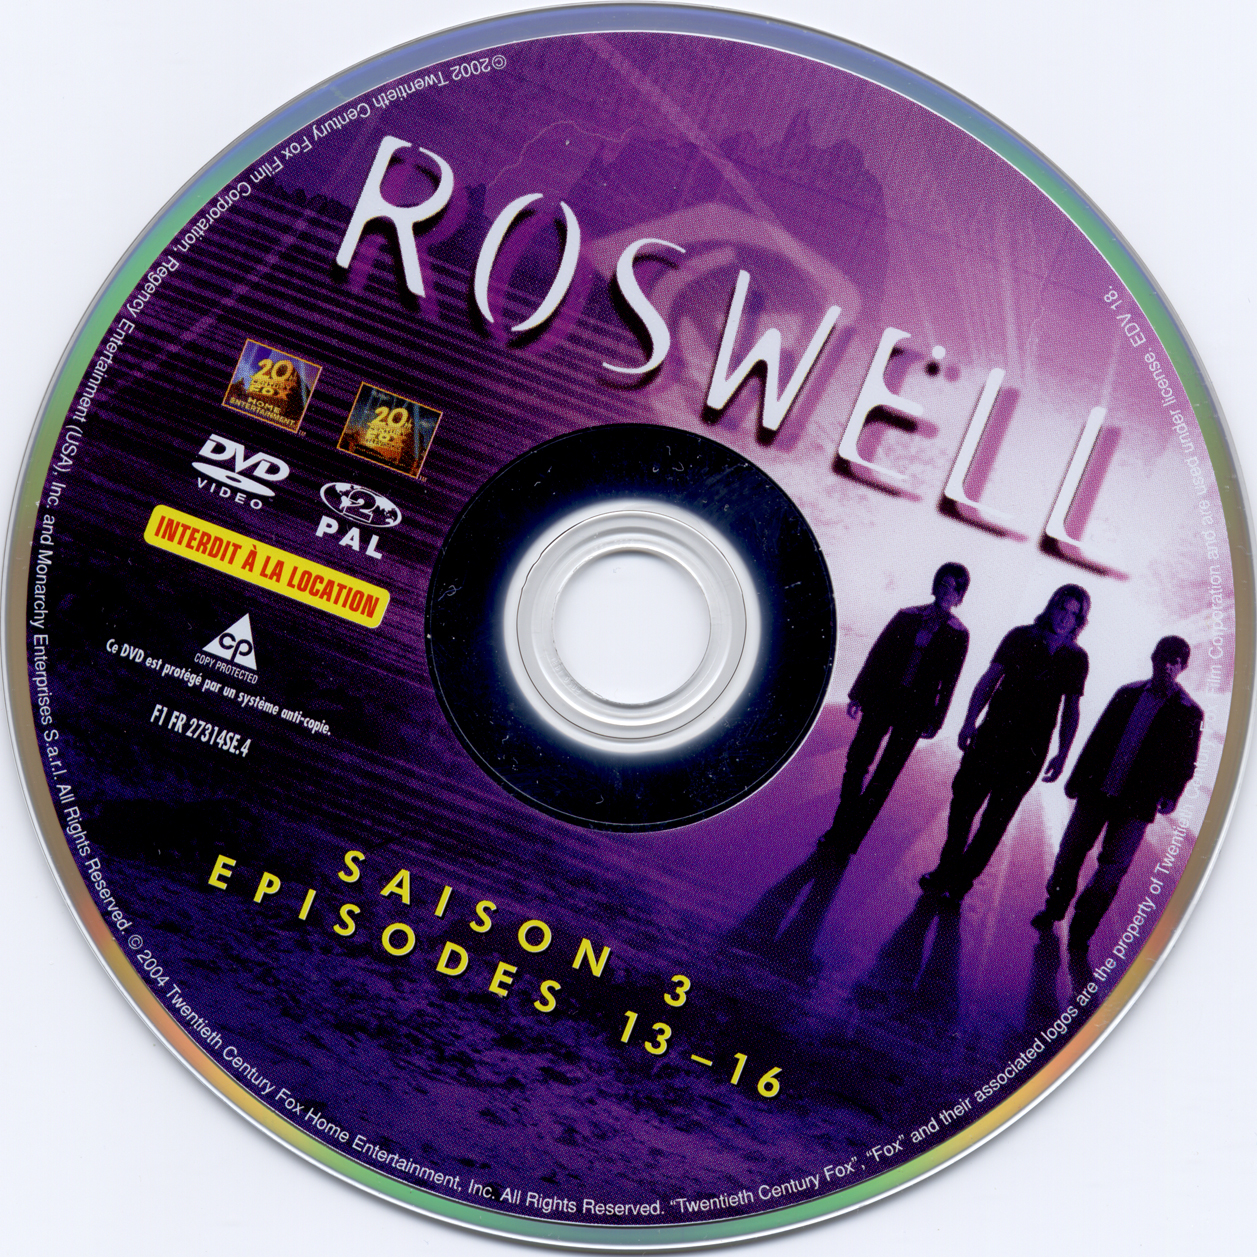 Roswell saison 3 dvd 4